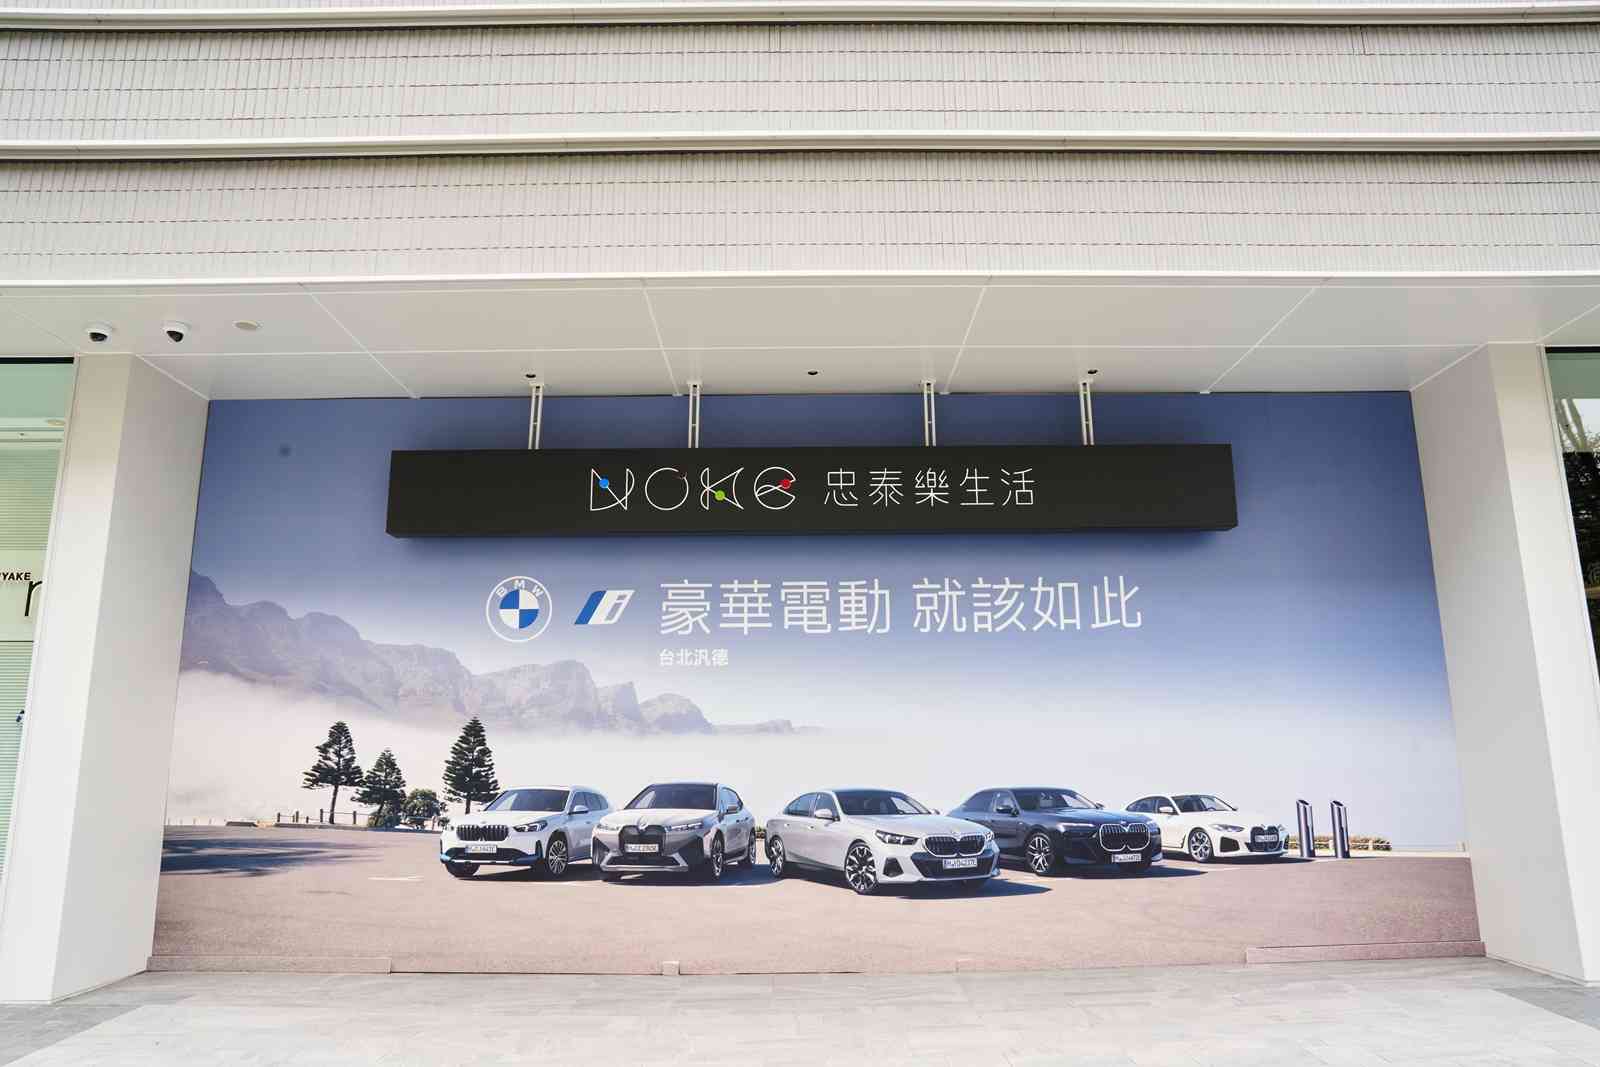 「BMW i純電生活概念店」進駐NOKE忠泰樂生活前衛新世代美學與永續未來設計 打造頂級純電品牌體驗